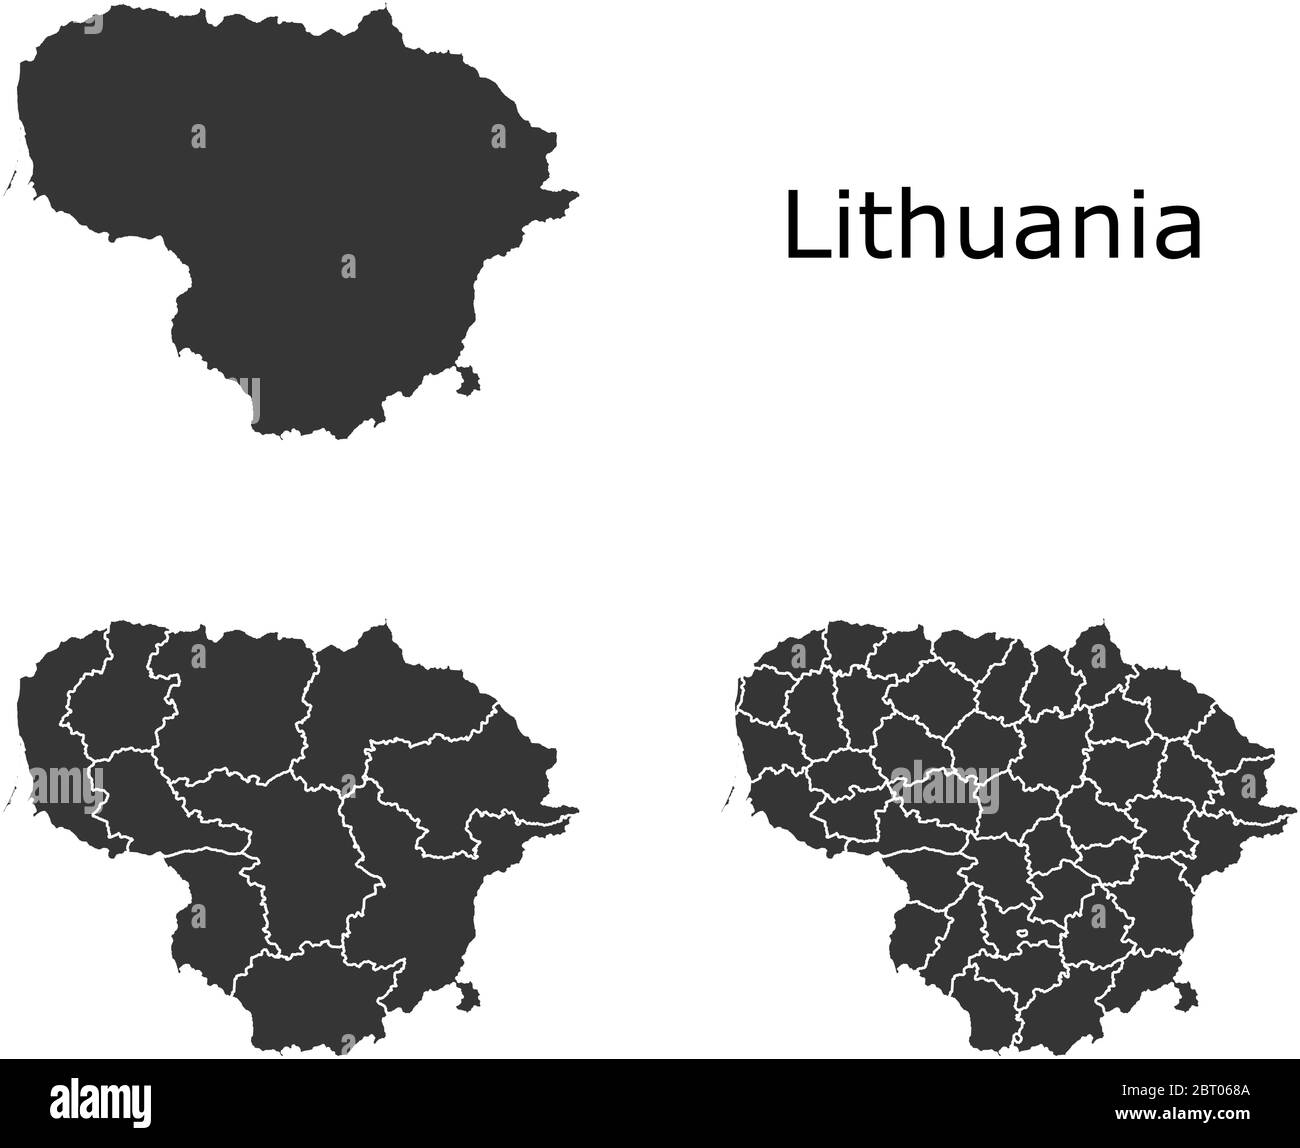 Cartes vectorielles de la Lituanie avec régions administratives, municipalités, départements, frontières Illustration de Vecteur